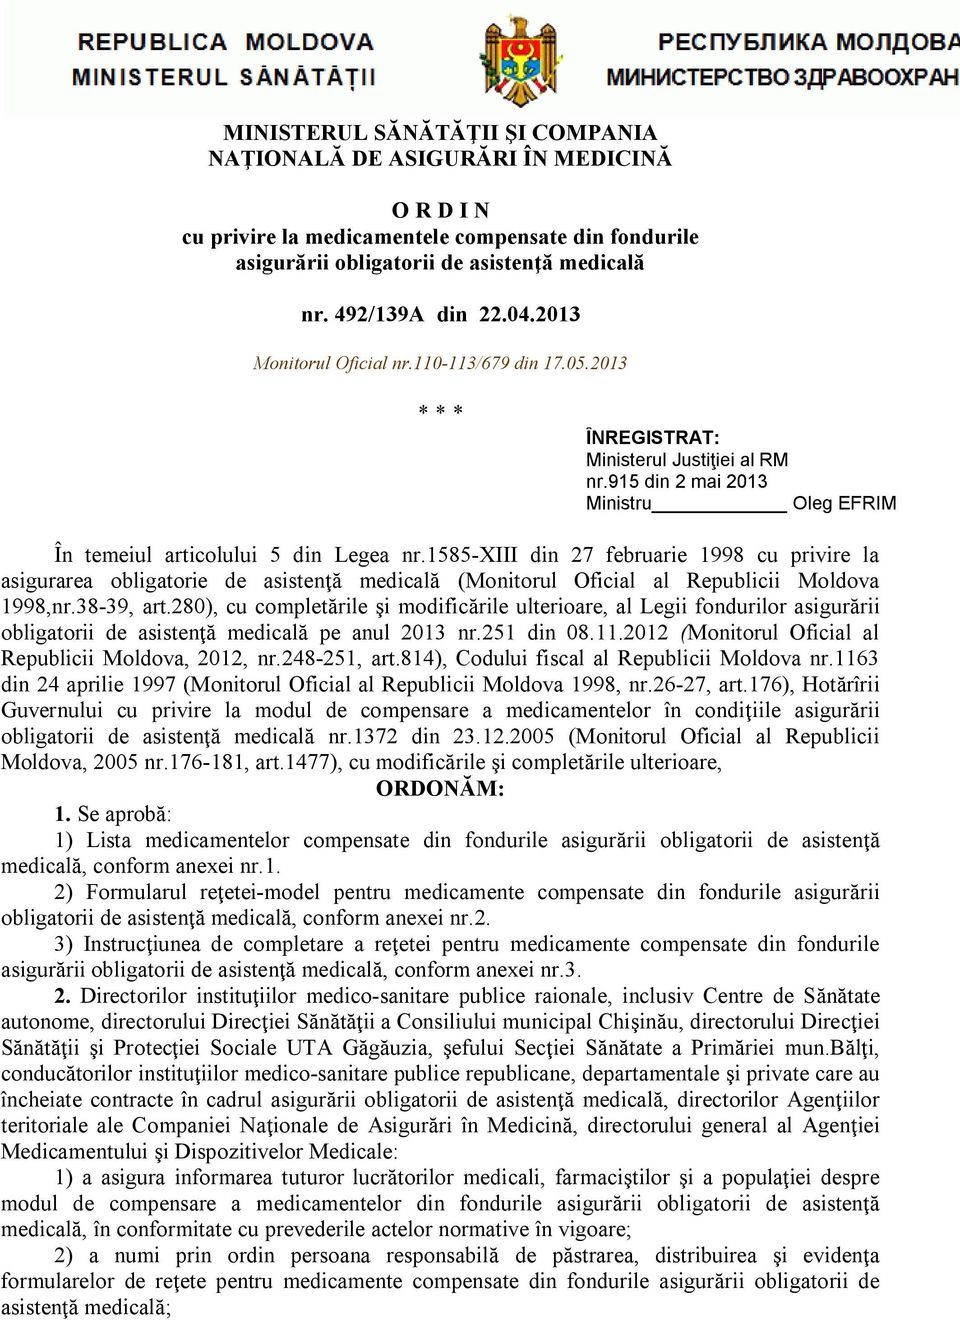 1585-xiii din 27 februarie 1998 cu privire la asigurarea obligatorie de asistenţă medicală (Monitorul Oficial al Republicii Moldova 1998,nr.38-39, art.